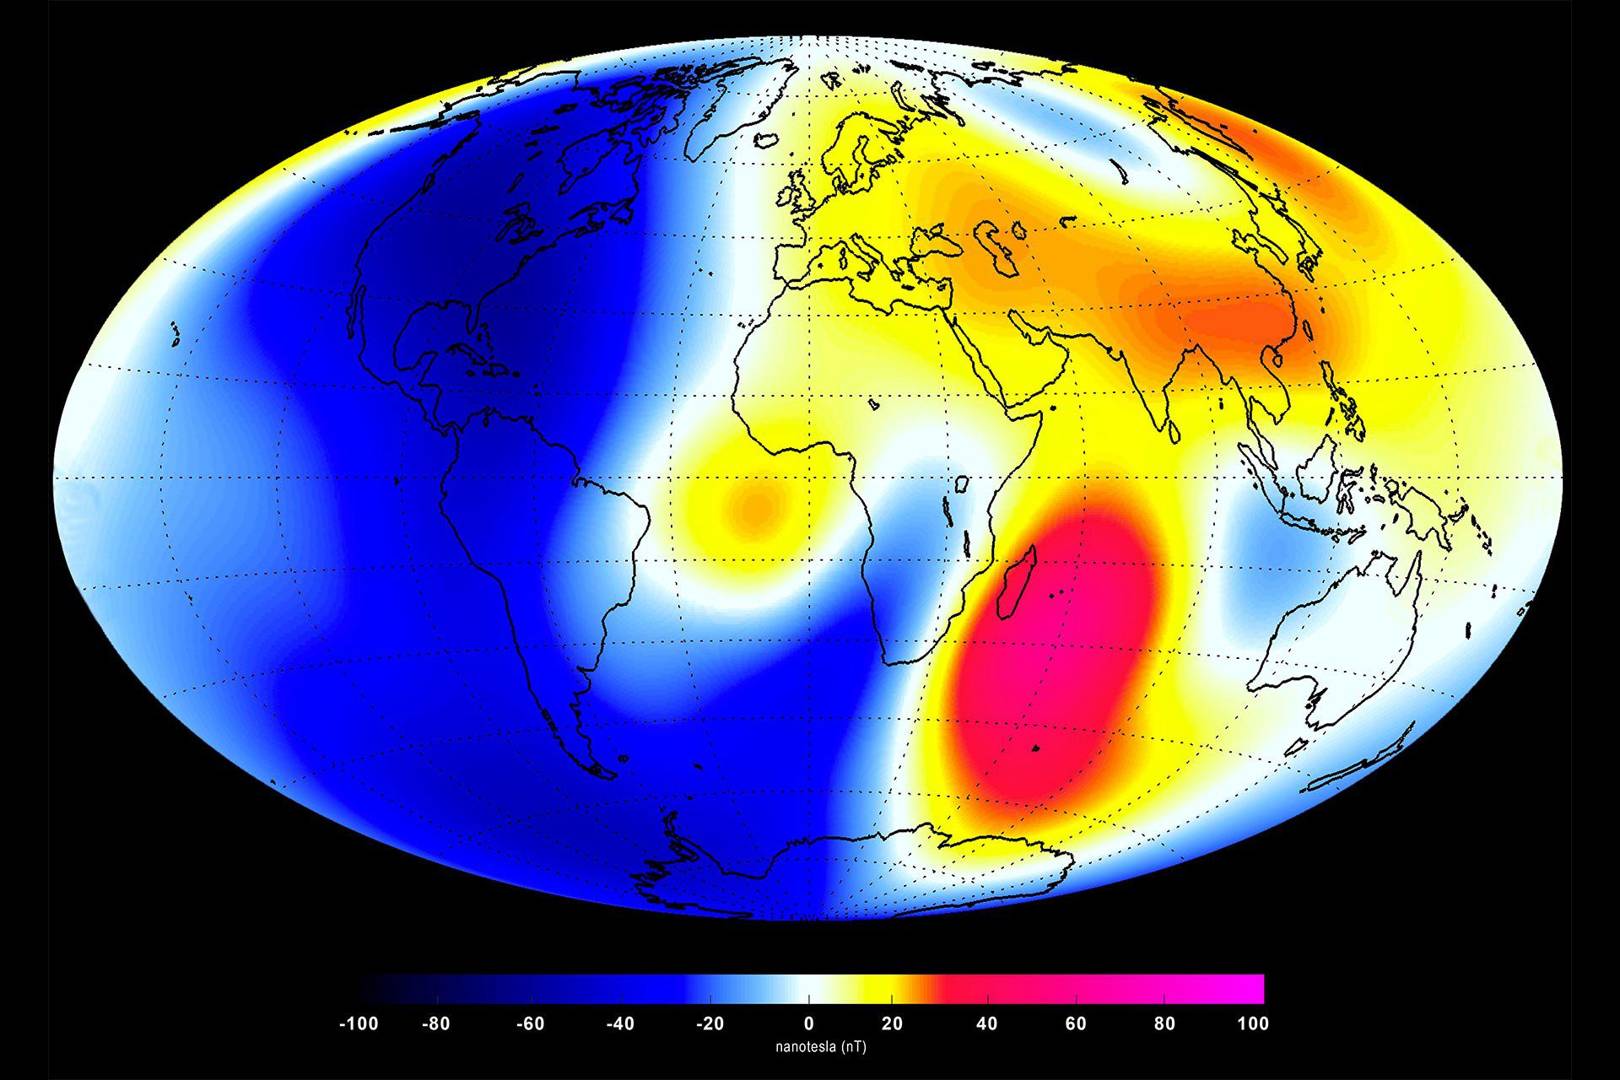 Earth's magnetic field is WEAKENING